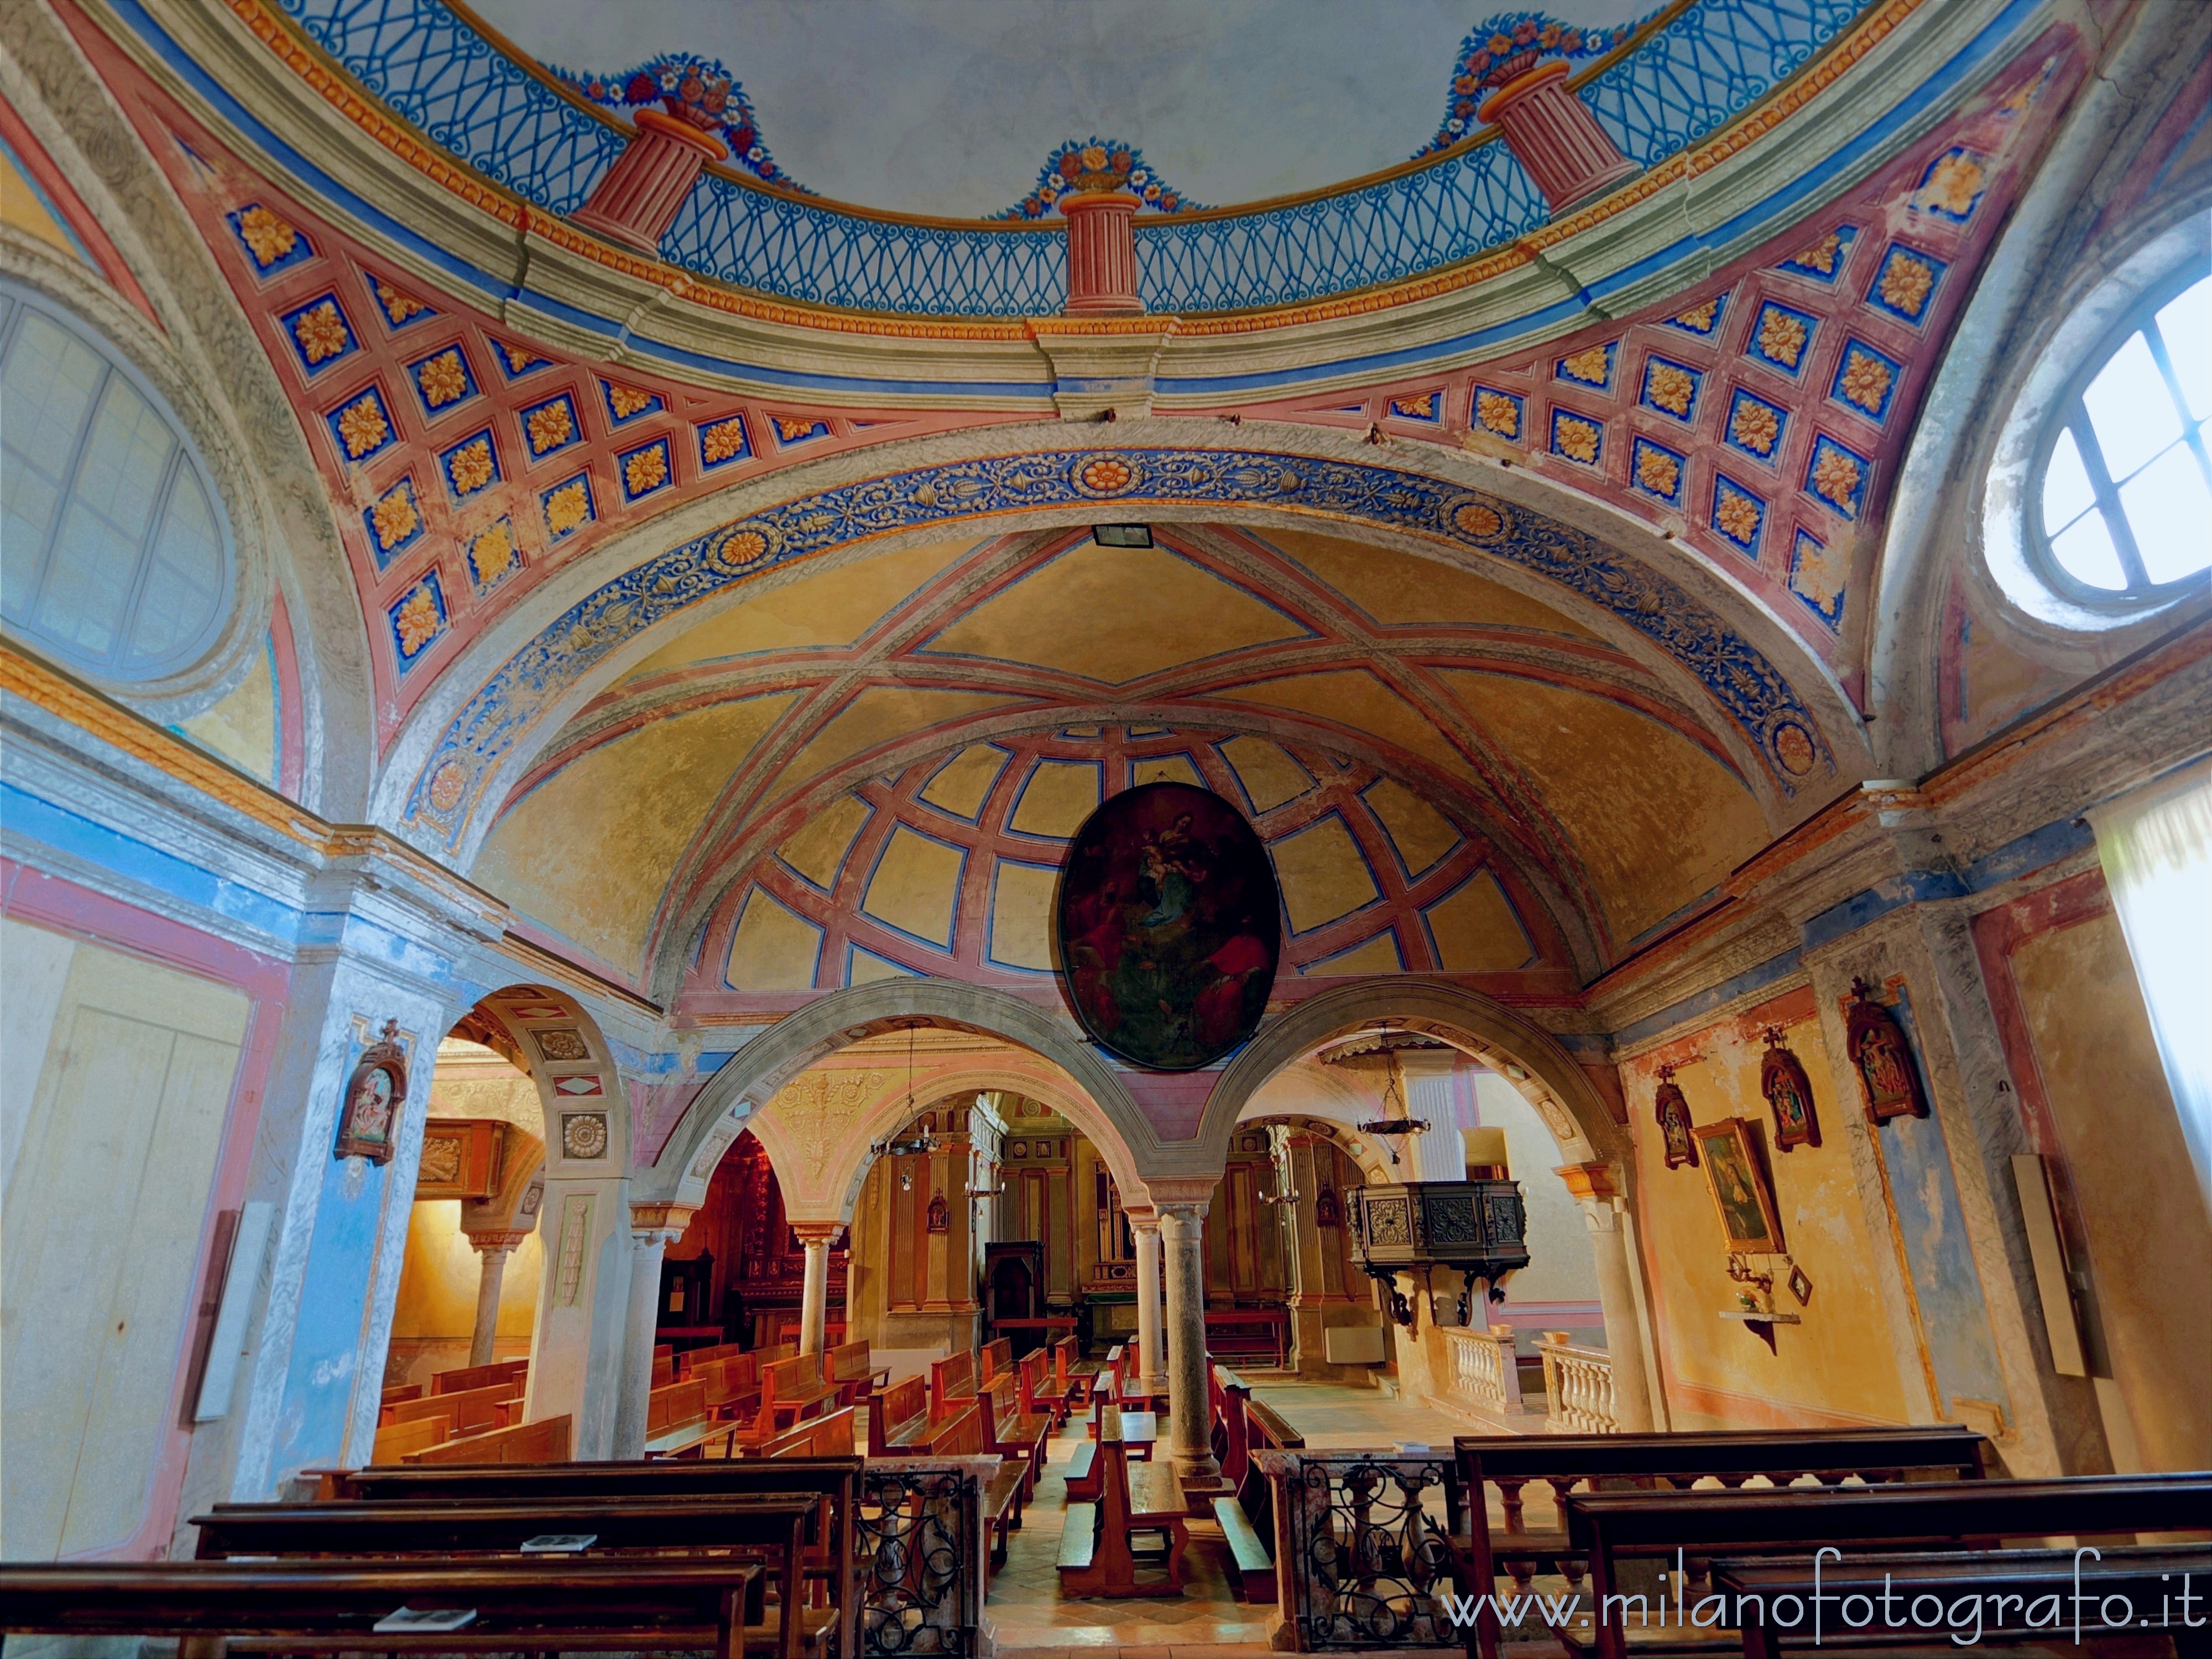 Candelo (Biella, Italy): Interior of the Chapel of Santa Marta in the Church of Santa Maria Maggiore - Candelo (Biella, Italy)